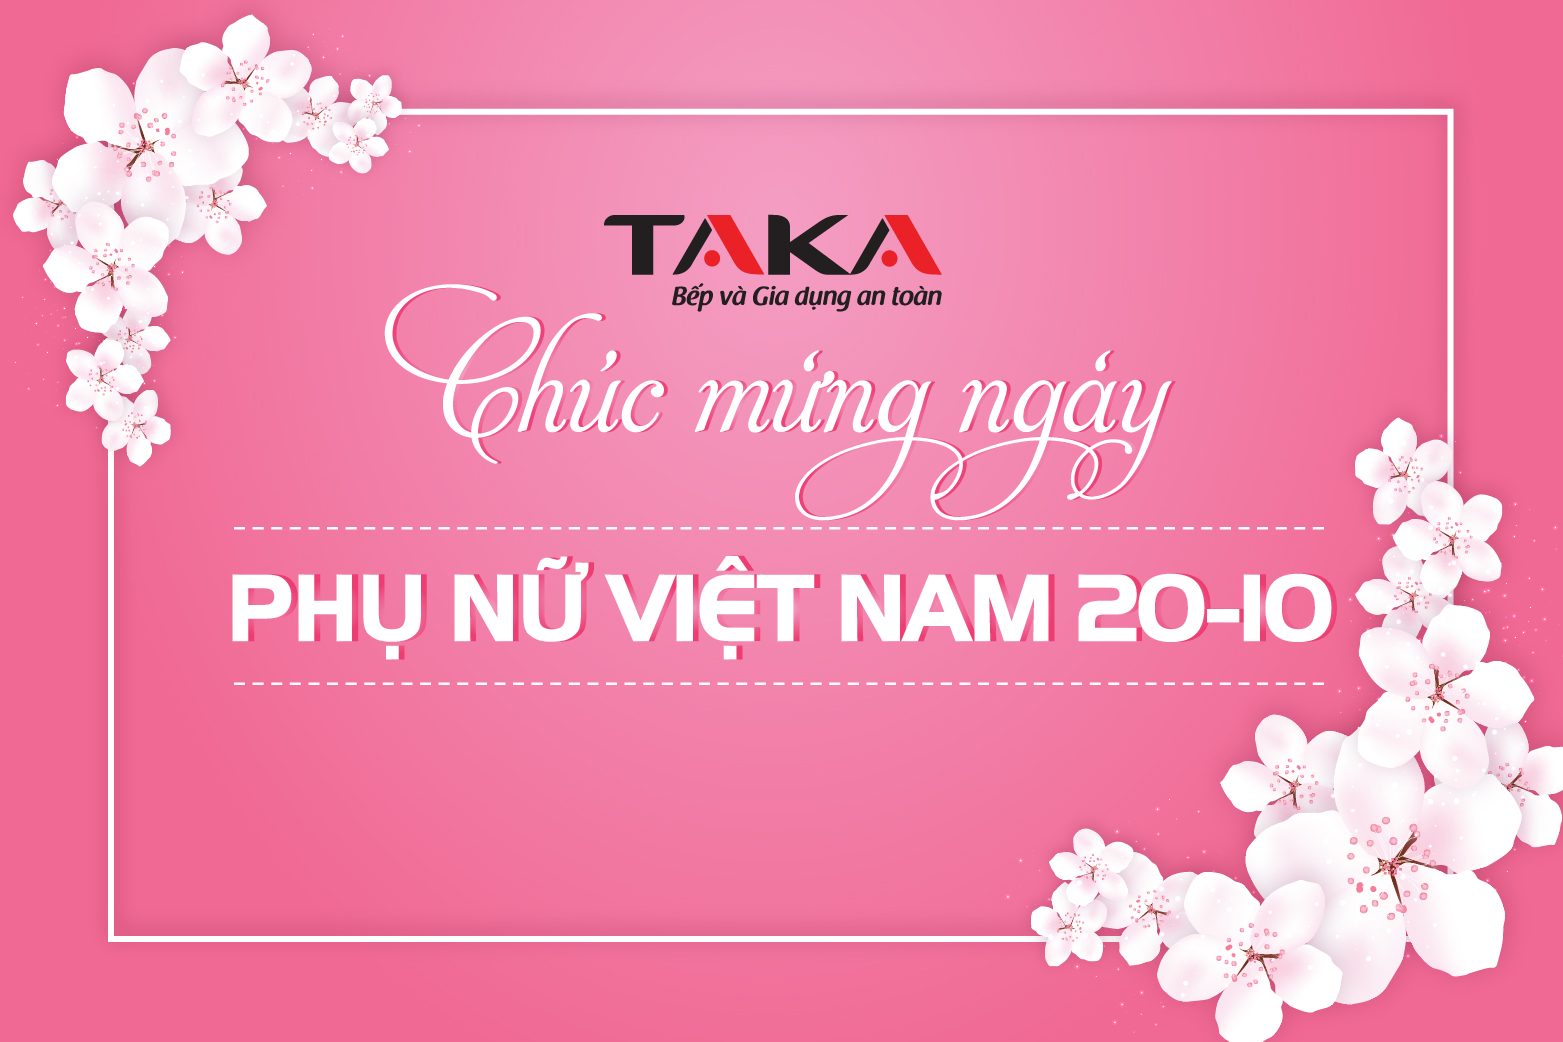 20-10 Cùng Taka Việt Nam gắn kết yêu thương